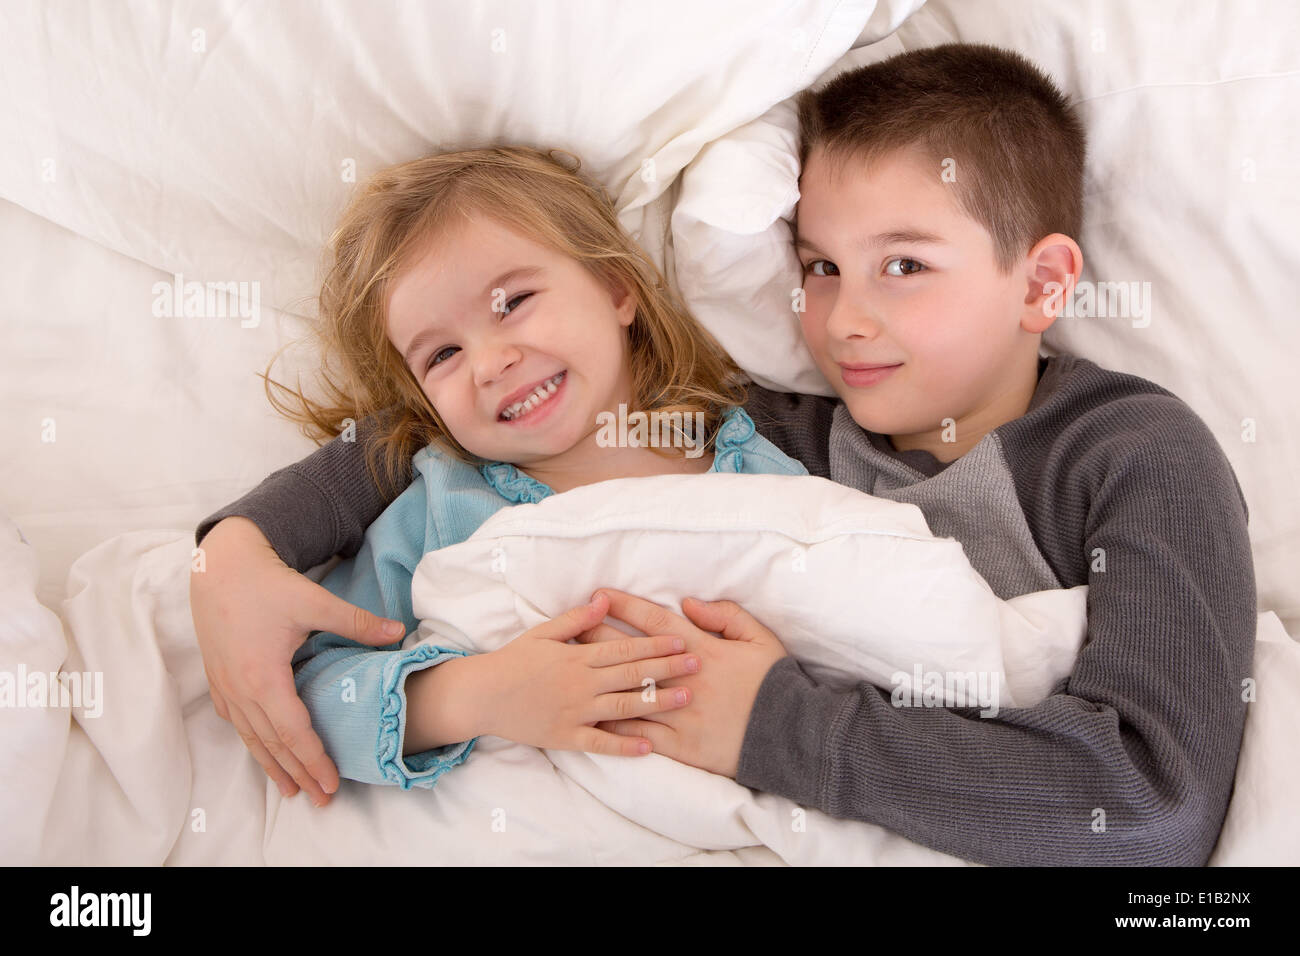 Les jeunes frère et sœur espiègle lit en souriant à la caméra en tant qu'elles se trouvent côte à côte sous la couette sommeil préparation Banque D'Images